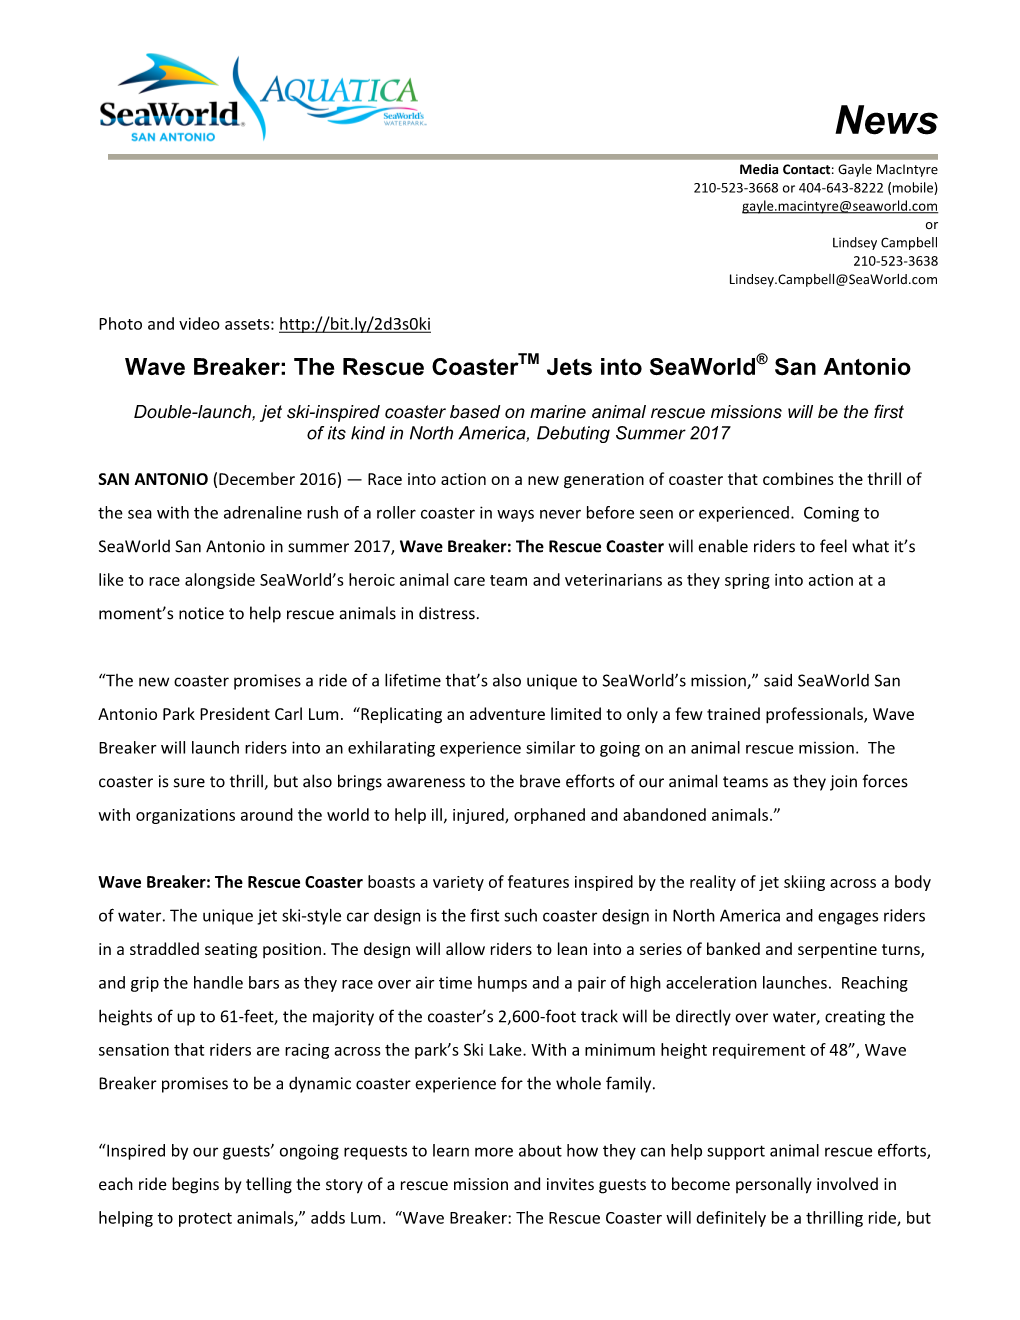 Wave Breaker: the Rescue Coaster Jets Into Seaworld San Antonio